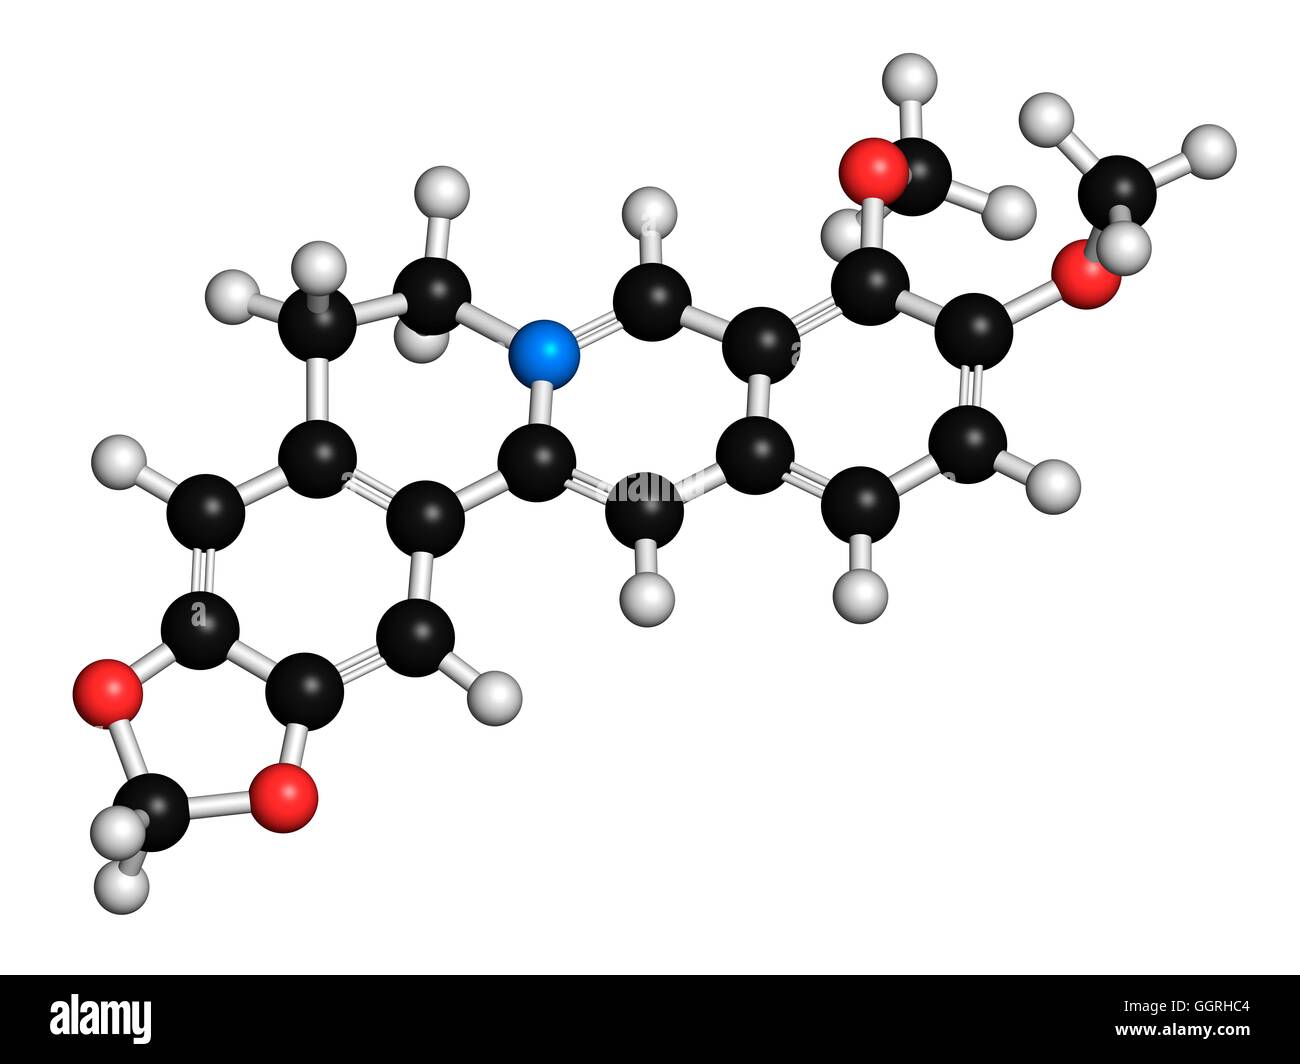 Berberina medicina herbaria, modelo molecular. Los átomos son representados como esferas con codificación de color convencional: hidrógeno (blanco), el Carbono (negros), nitrógeno (azul), el oxígeno (rojo). Ilustración. Foto de stock